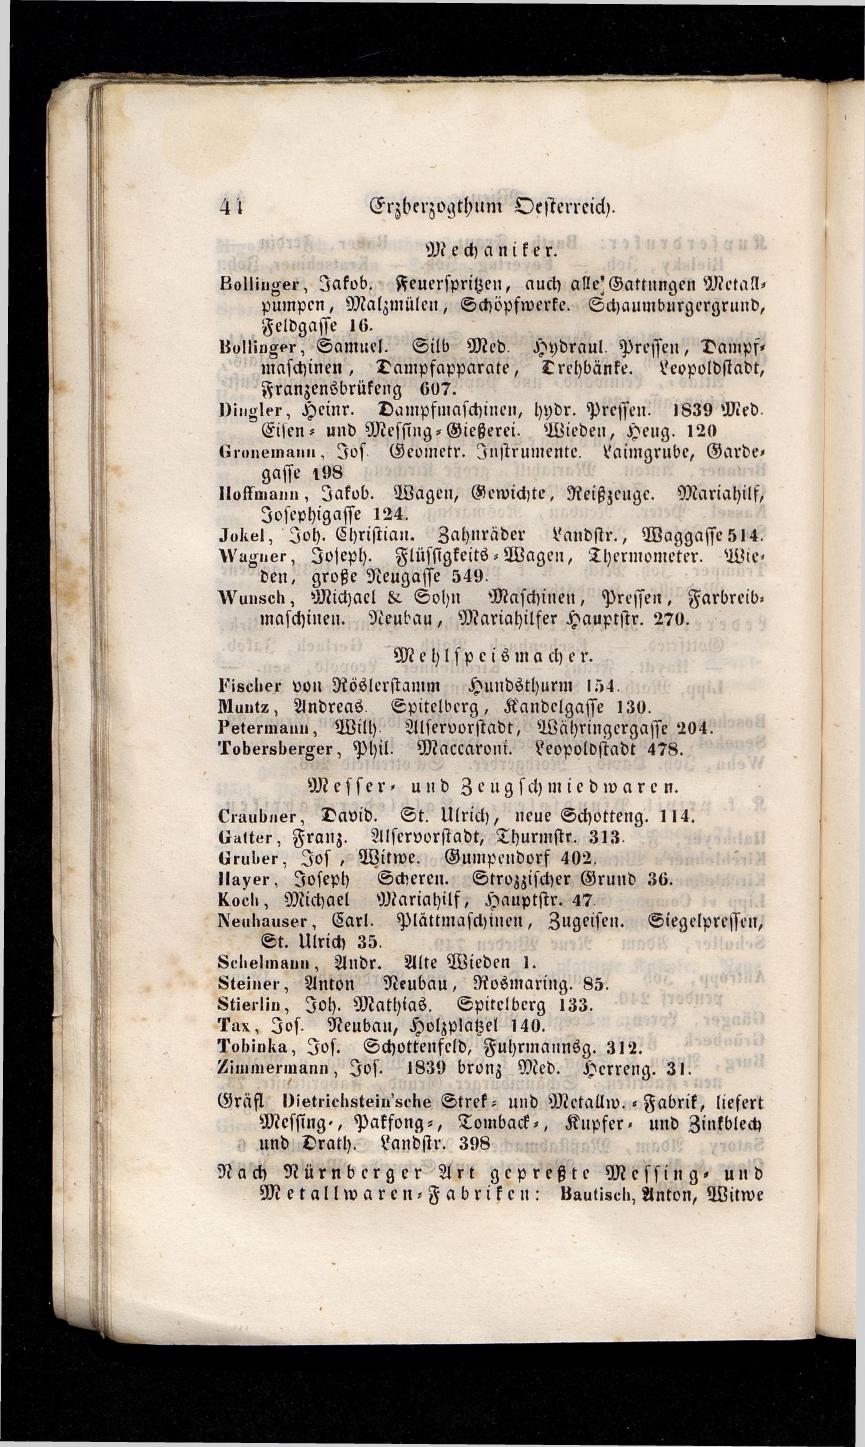 Grosses Adressbuch der Kaufleute. No. 13. Oesterreich ober u. unter der Enns 1844 - Seite 48